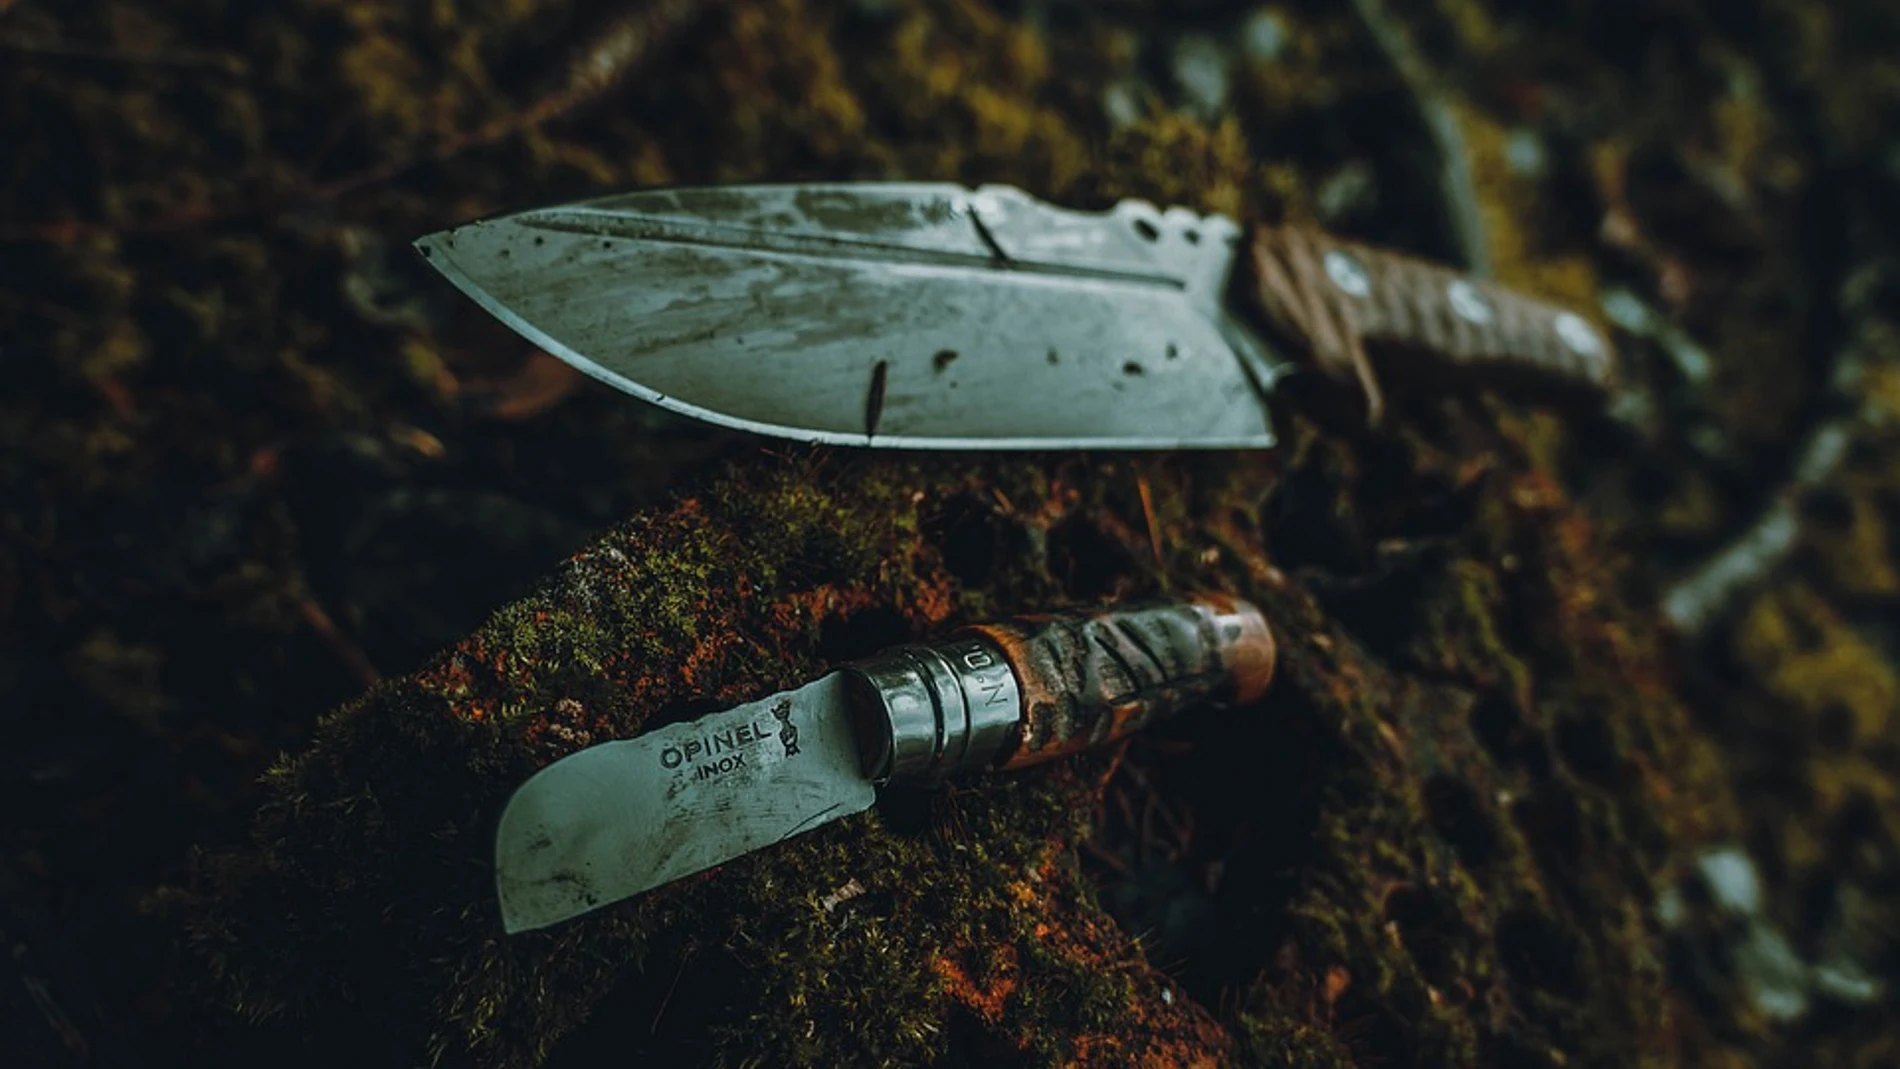 Cuchillo y navaja para distintos usos durante una jornada de caza.